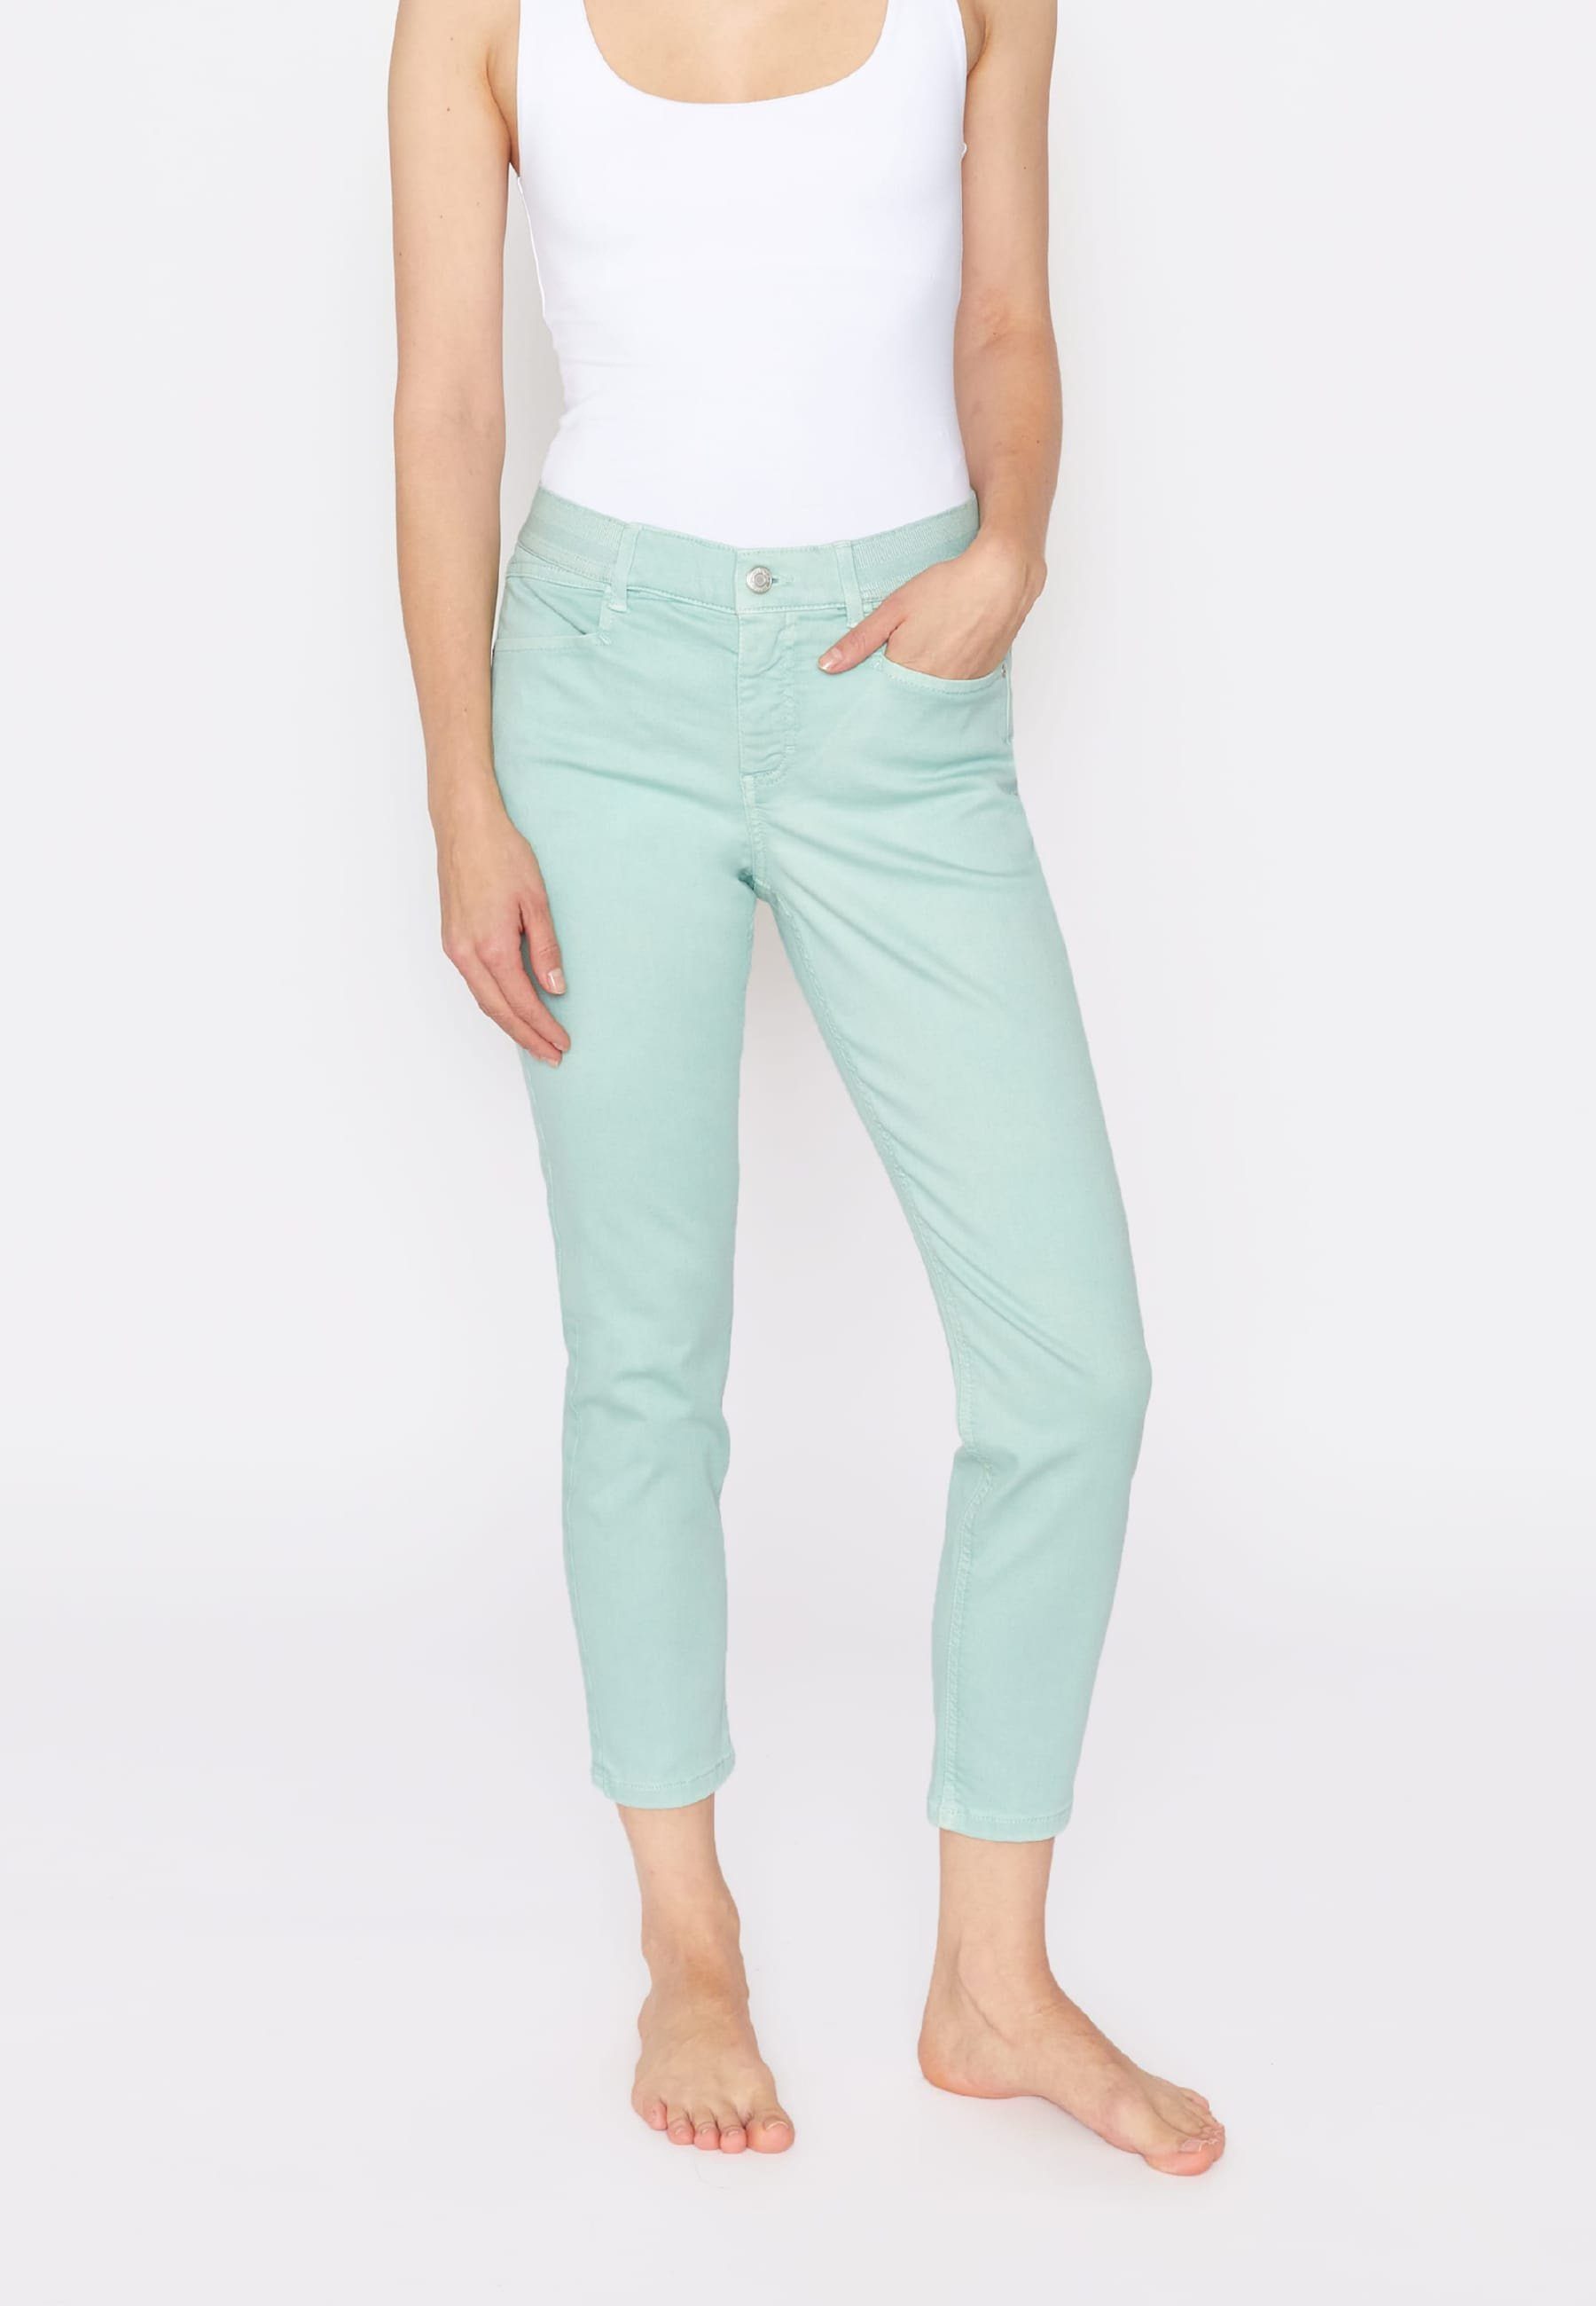 [Normaler Versandhandel im Laden] ANGELS Slim-fit-Jeans Jeans OSFA Crop Label-Applikationen mit Denim mint Coloured mit